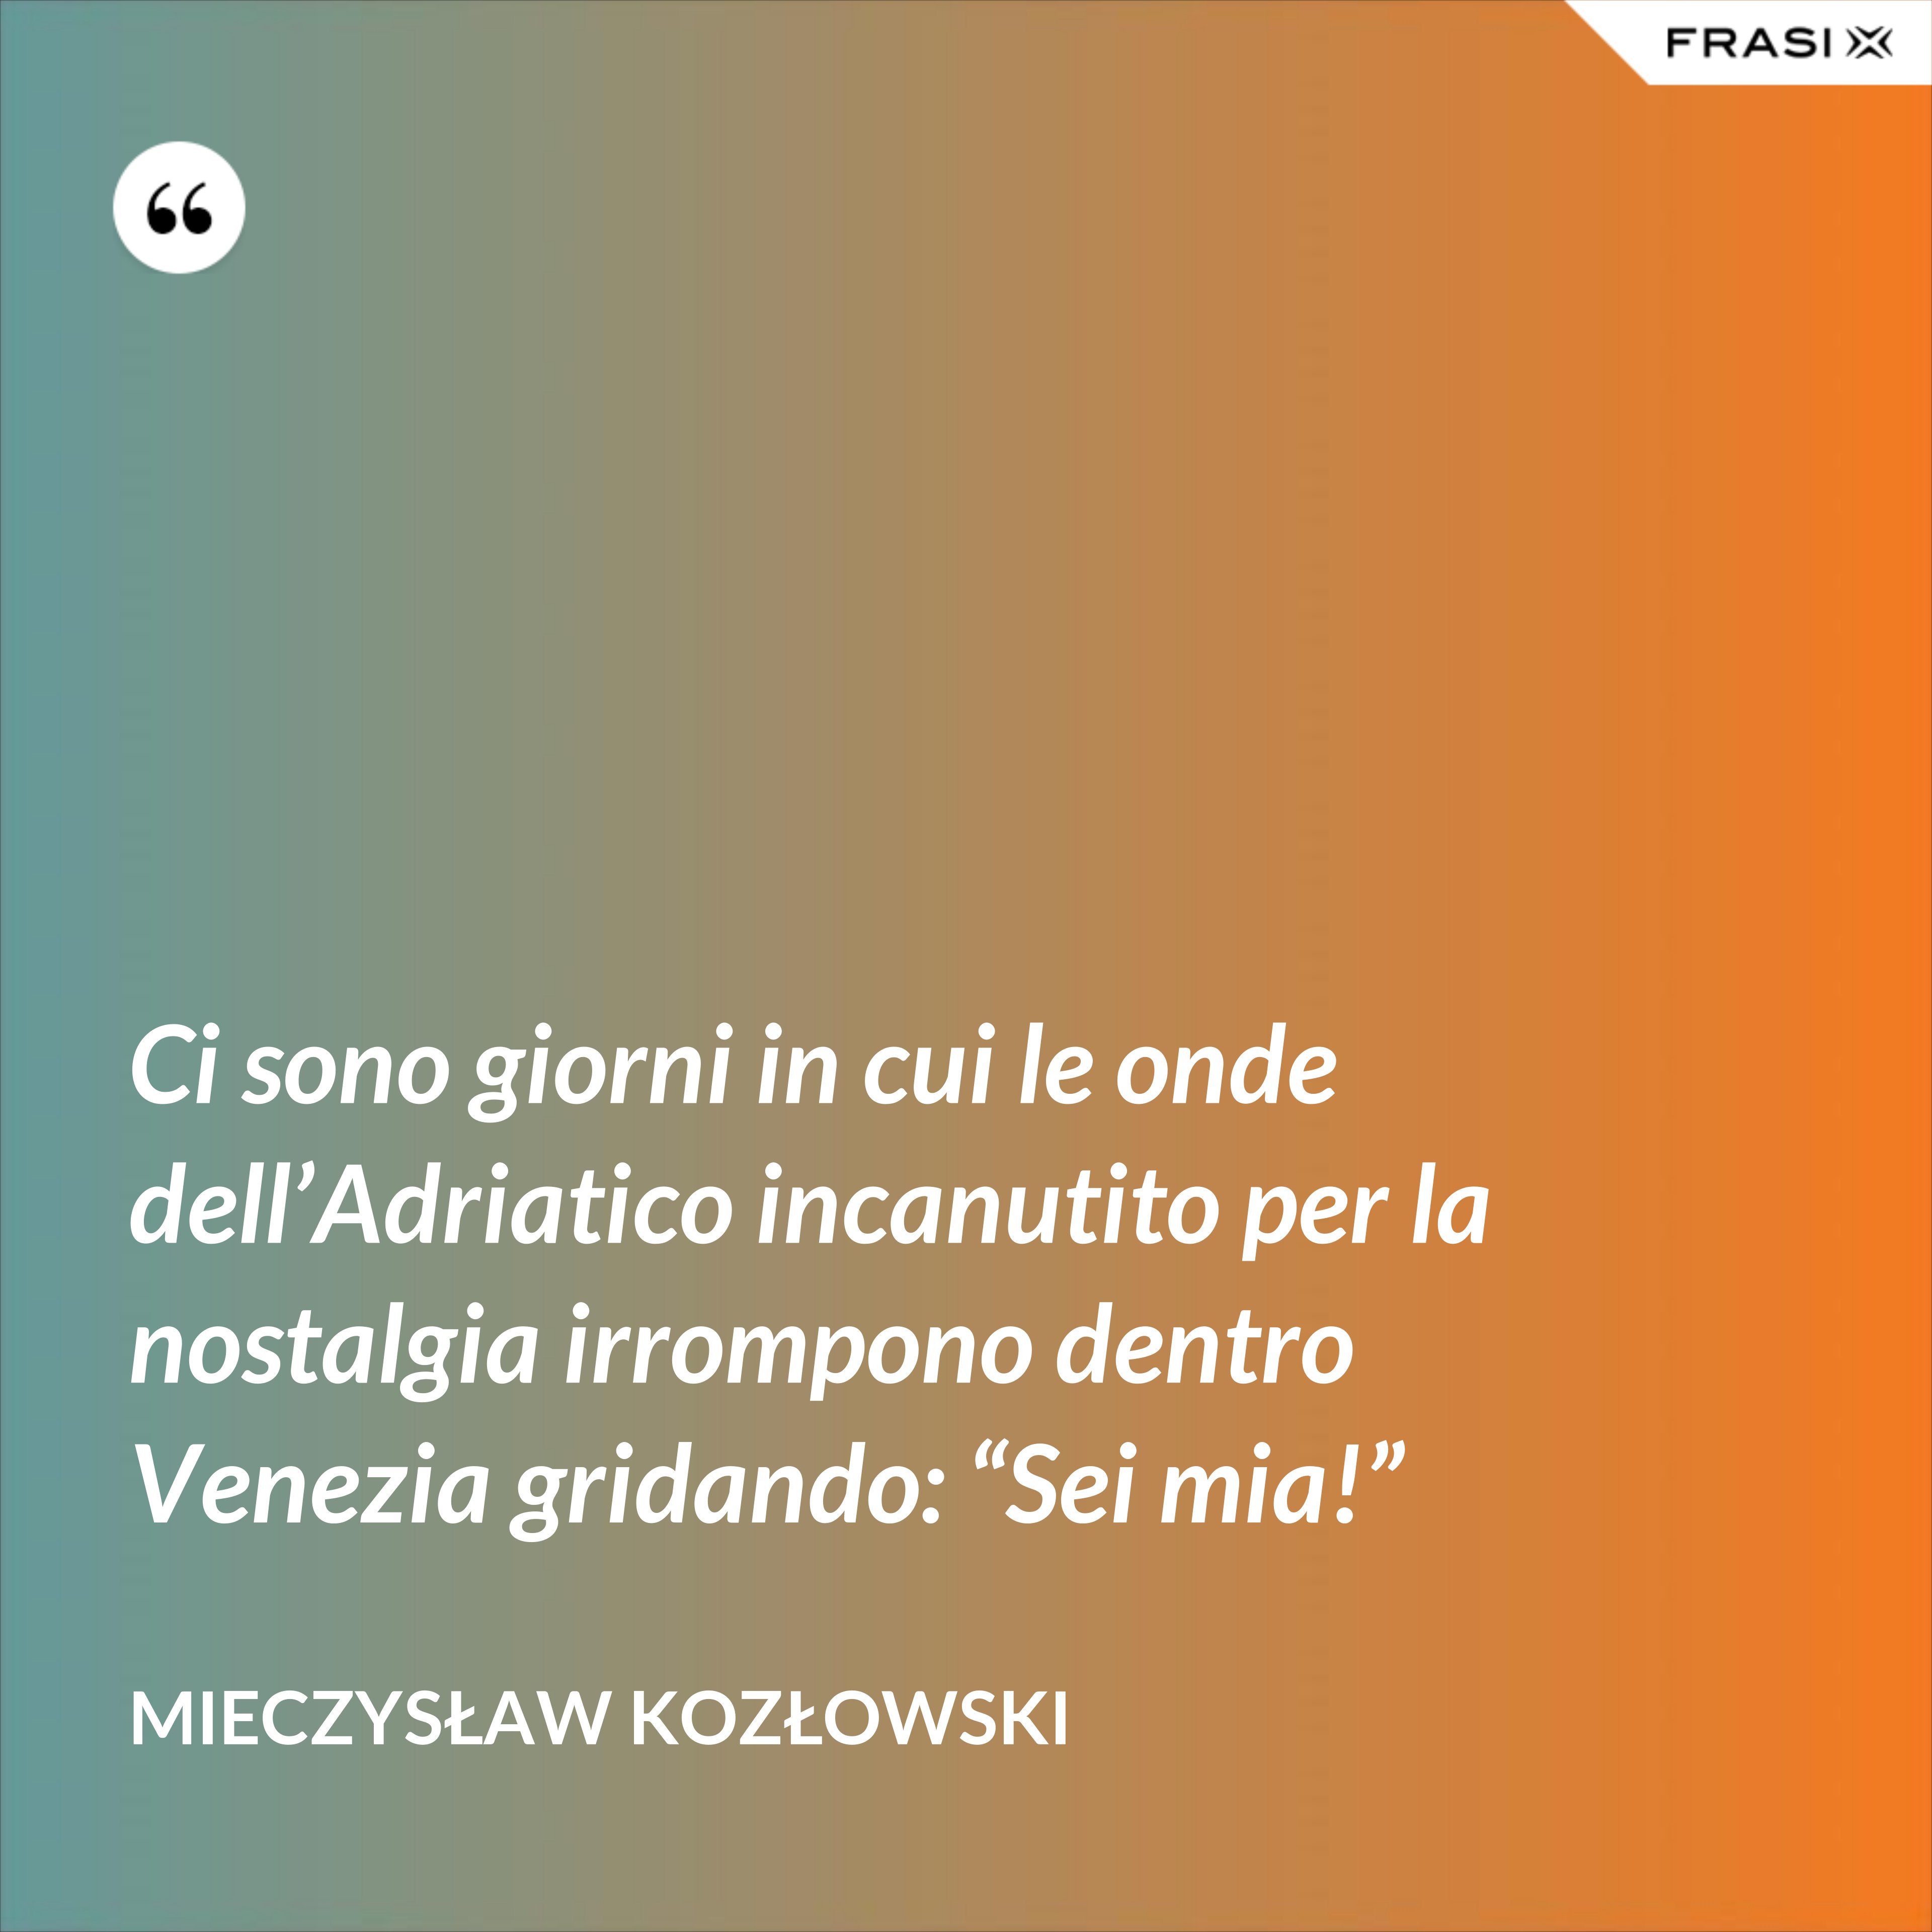 Ci sono giorni in cui le onde dell’Adriatico incanutito per la nostalgia irrompono dentro Venezia gridando: “Sei mia!” - Mieczysław Kozłowski